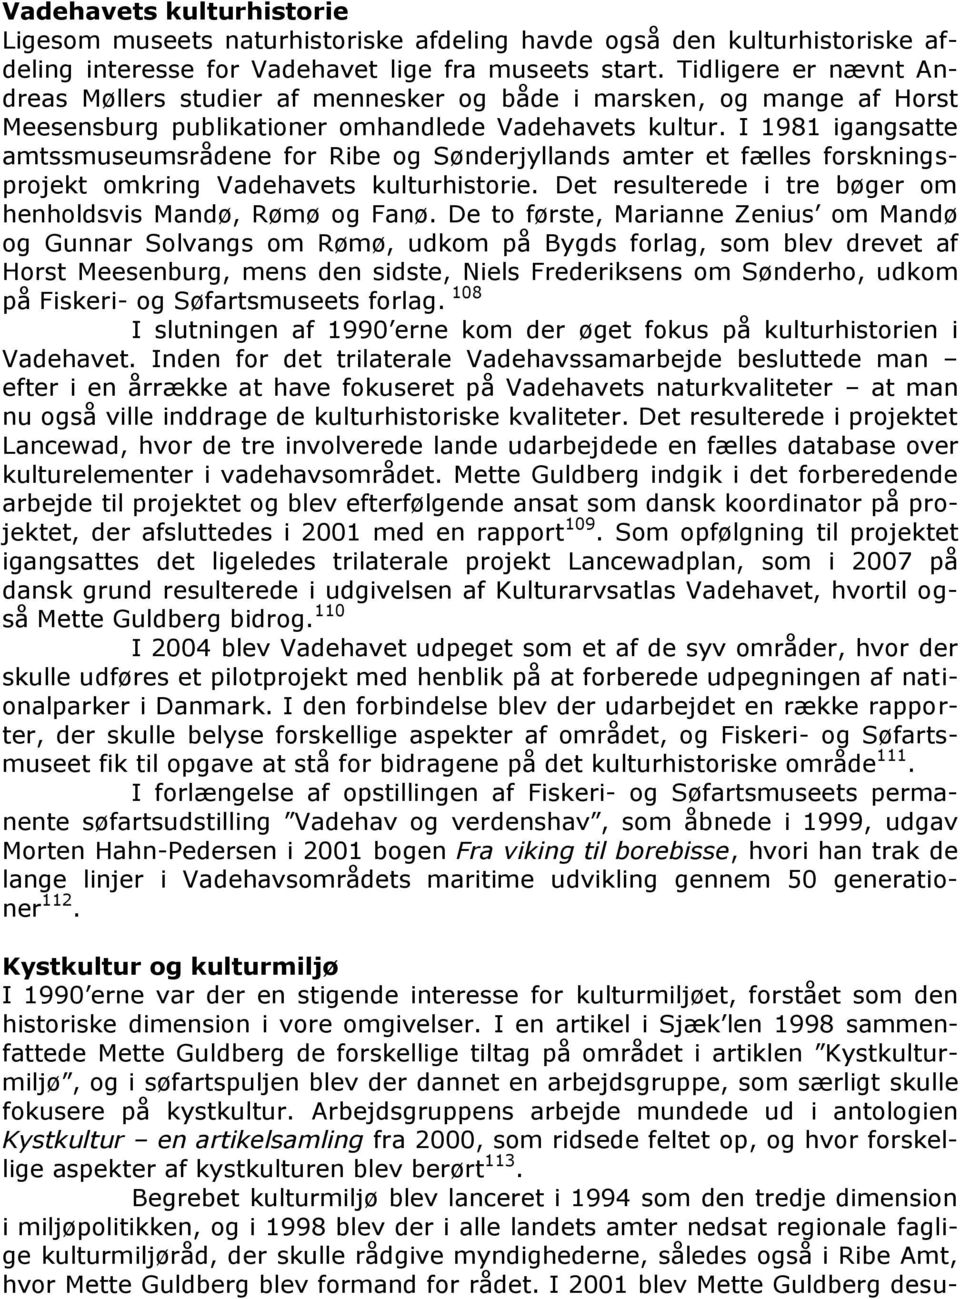 I 1981 igangsatte amtssmuseumsrådene for Ribe og Sønderjyllands amter et fælles forskningsprojekt omkring Vadehavets kulturhistorie. Det resulterede i tre bøger om henholdsvis Mandø, Rømø og Fanø.